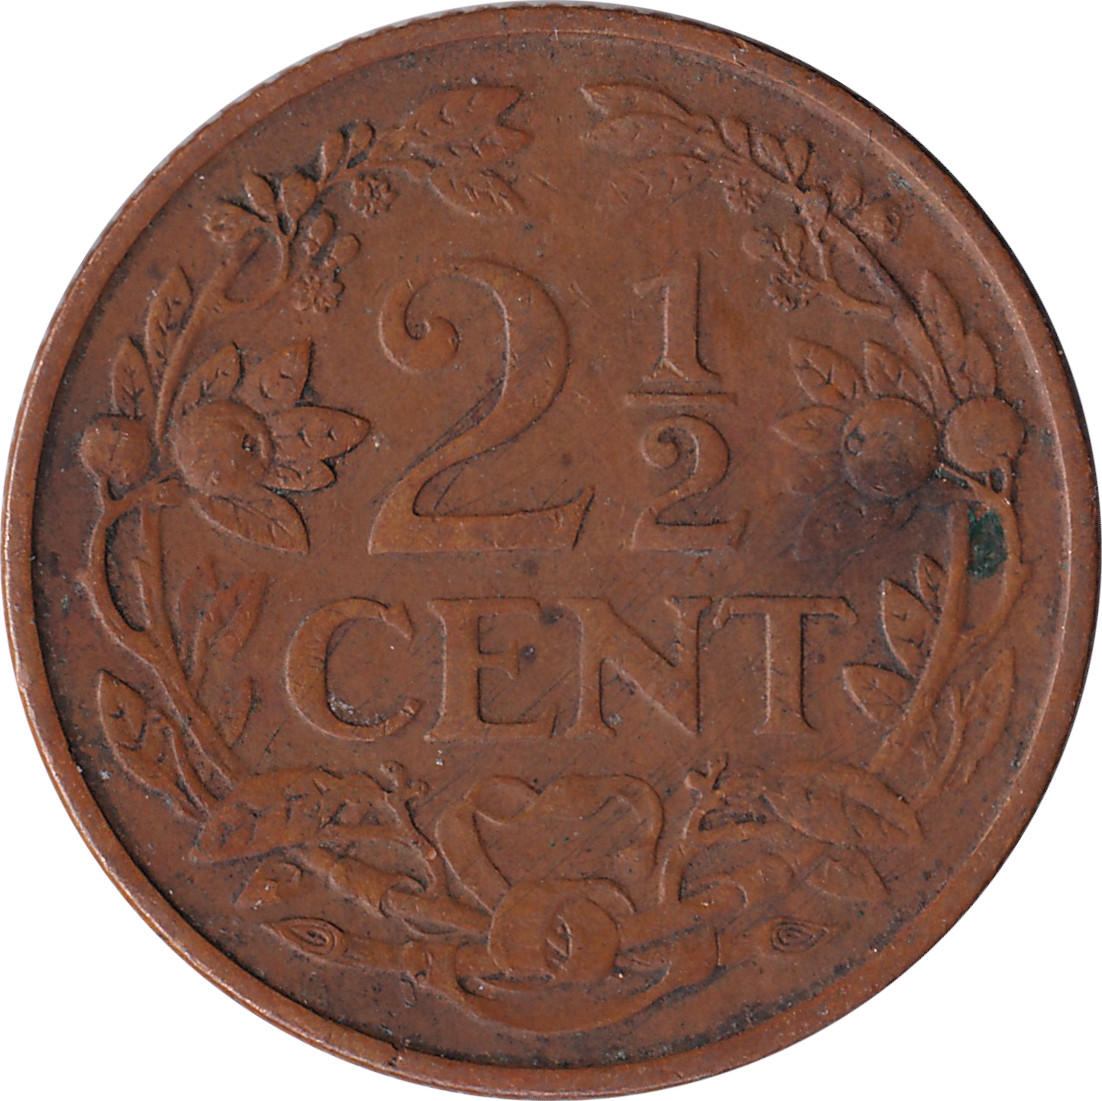 2 1/2 cents - Lion héraldique